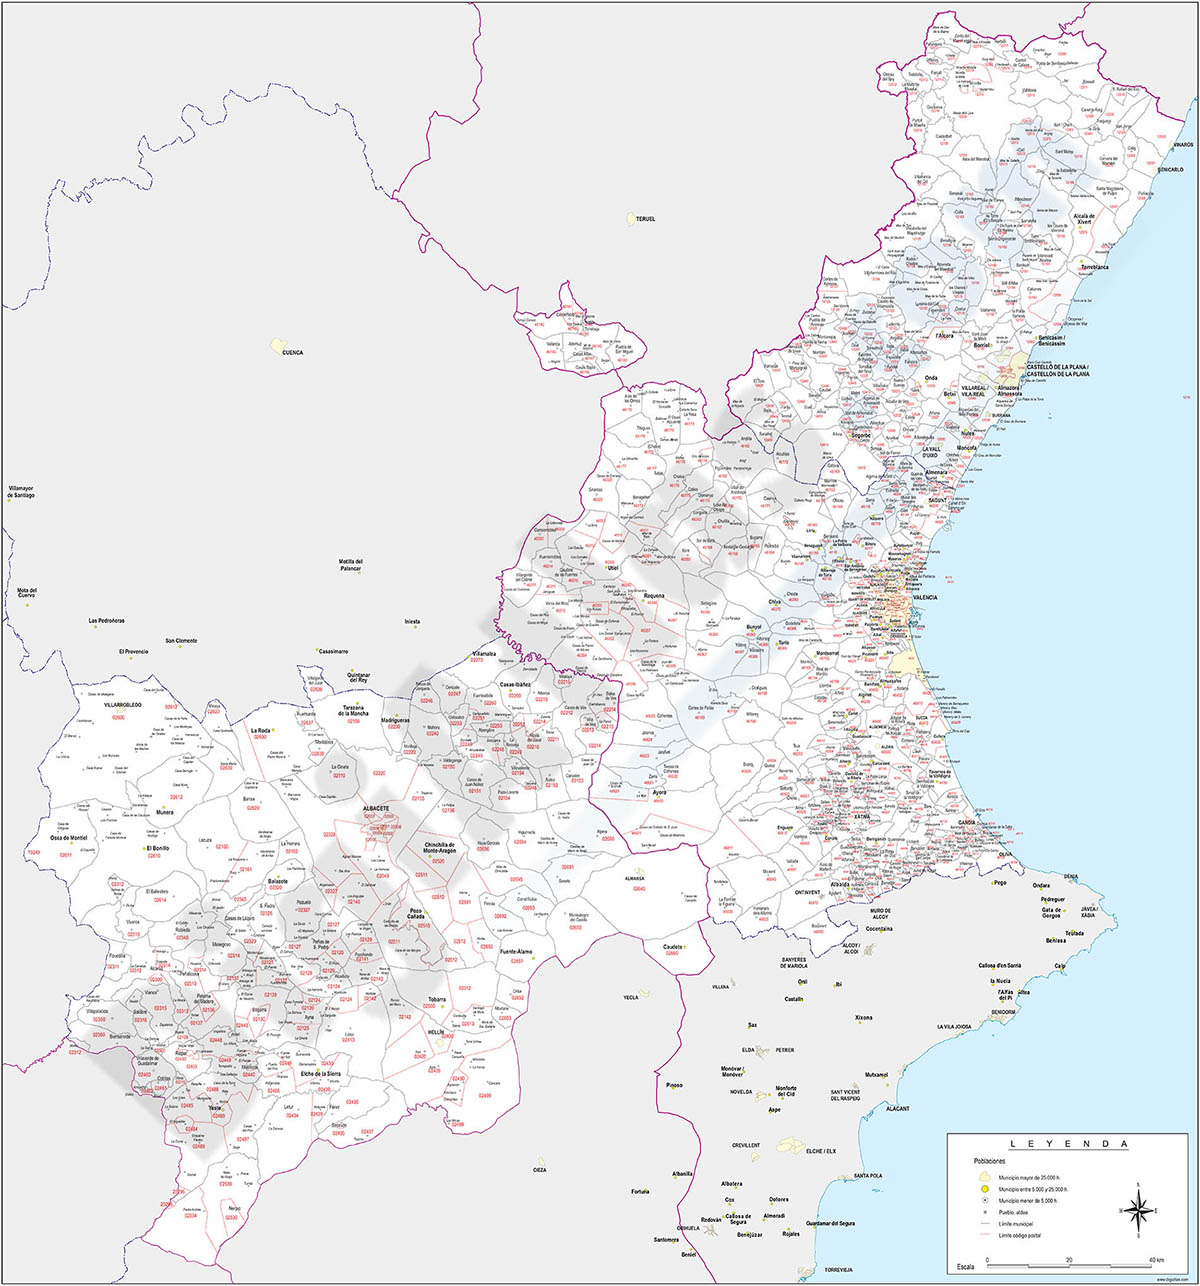 Mapa de códigos postales y municipios de las provincias de Albacete, Valencia y Castellon